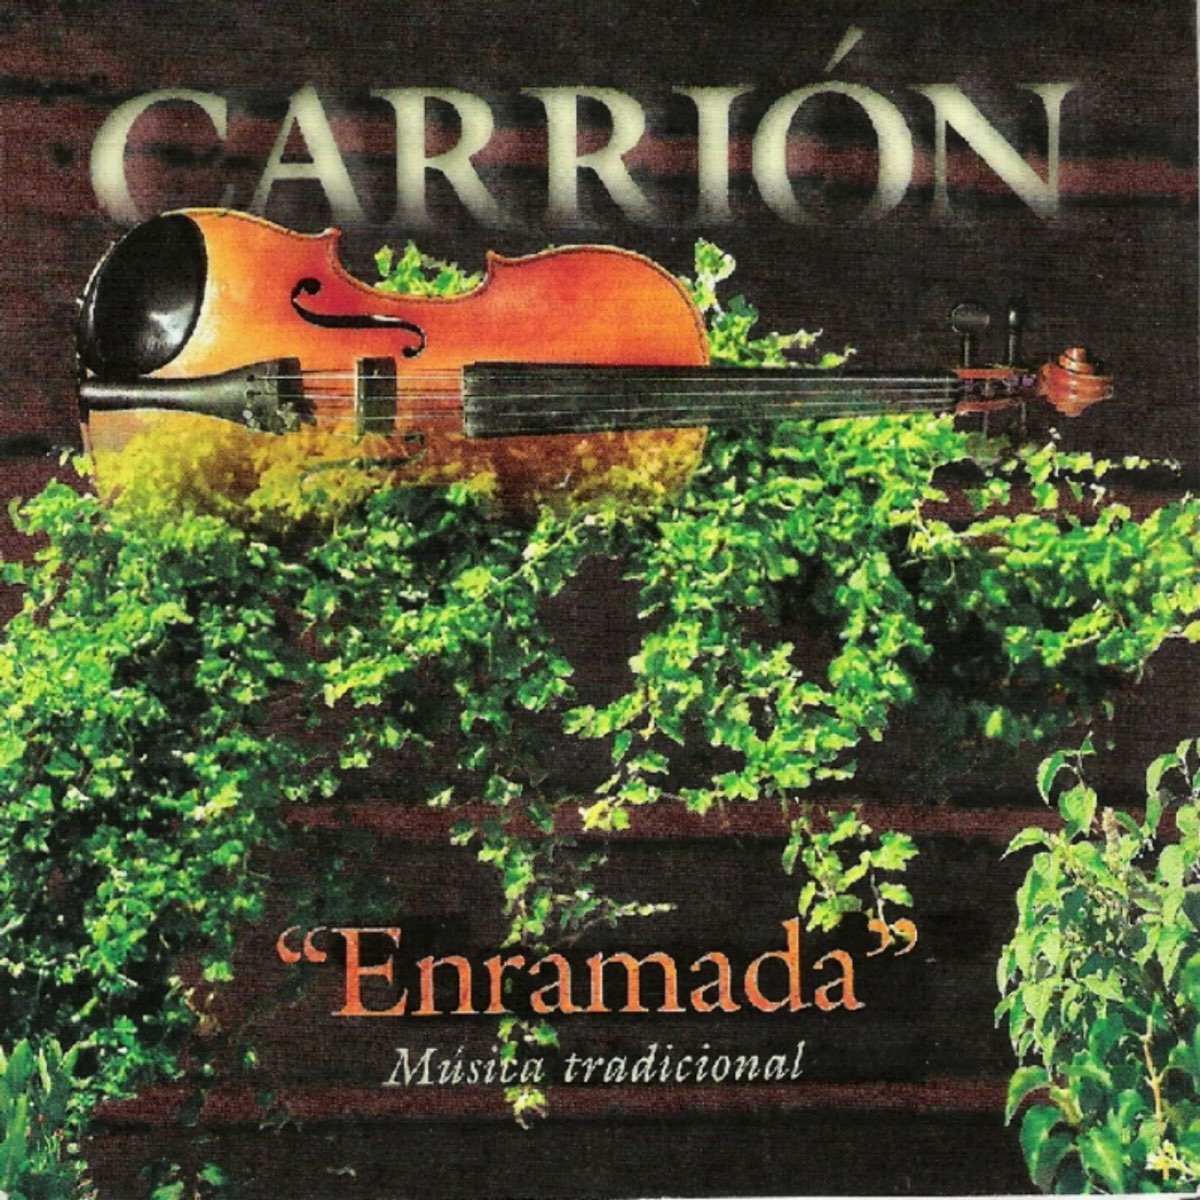 Enramada (1998) - Carrión Folk